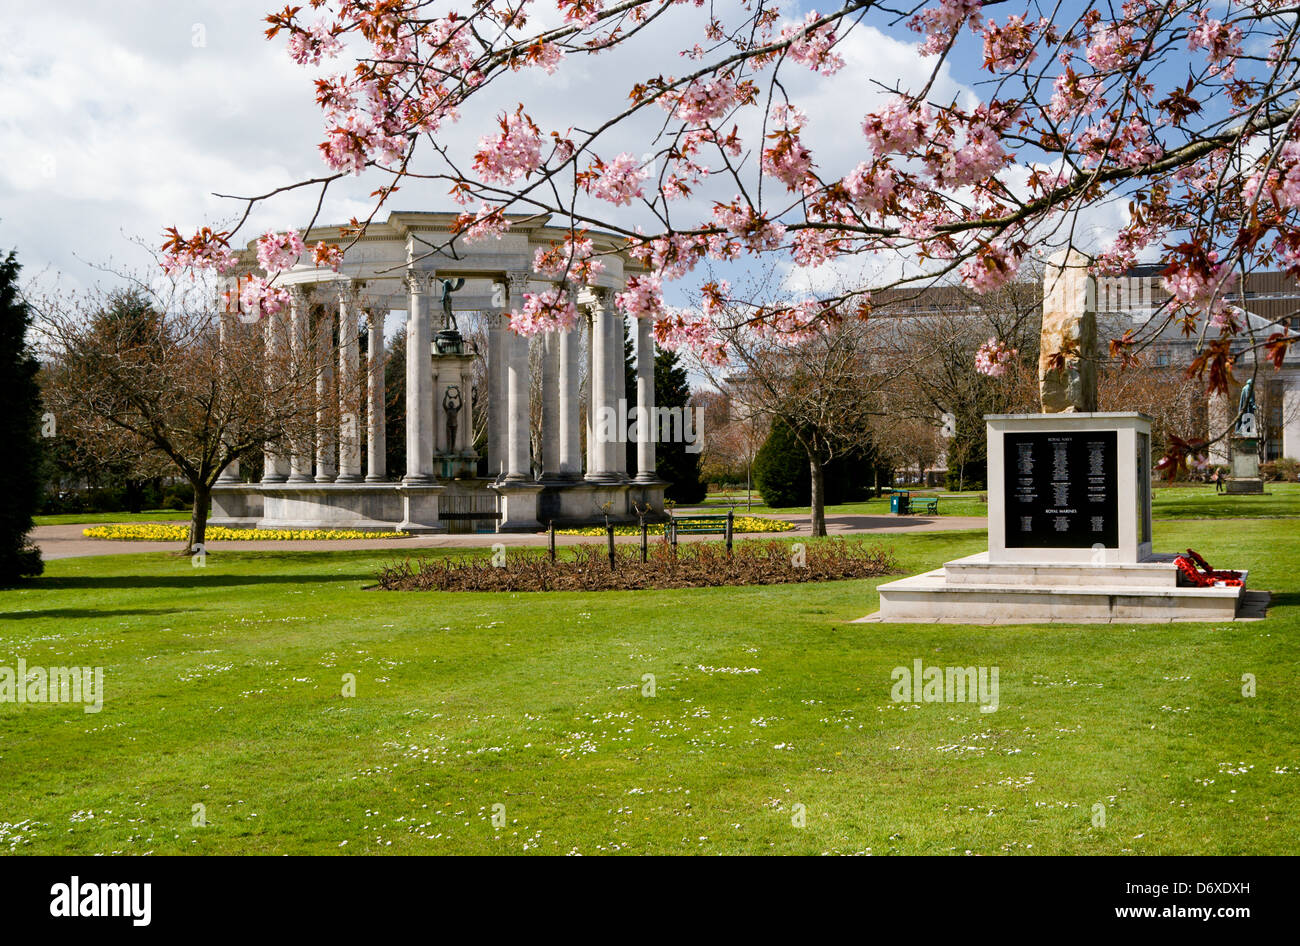 Monument commémoratif de la guerre des Malouines et War Memorial, Alexandra Gardens, Cathays Park, Cardiff, Pays de Galles. Banque D'Images